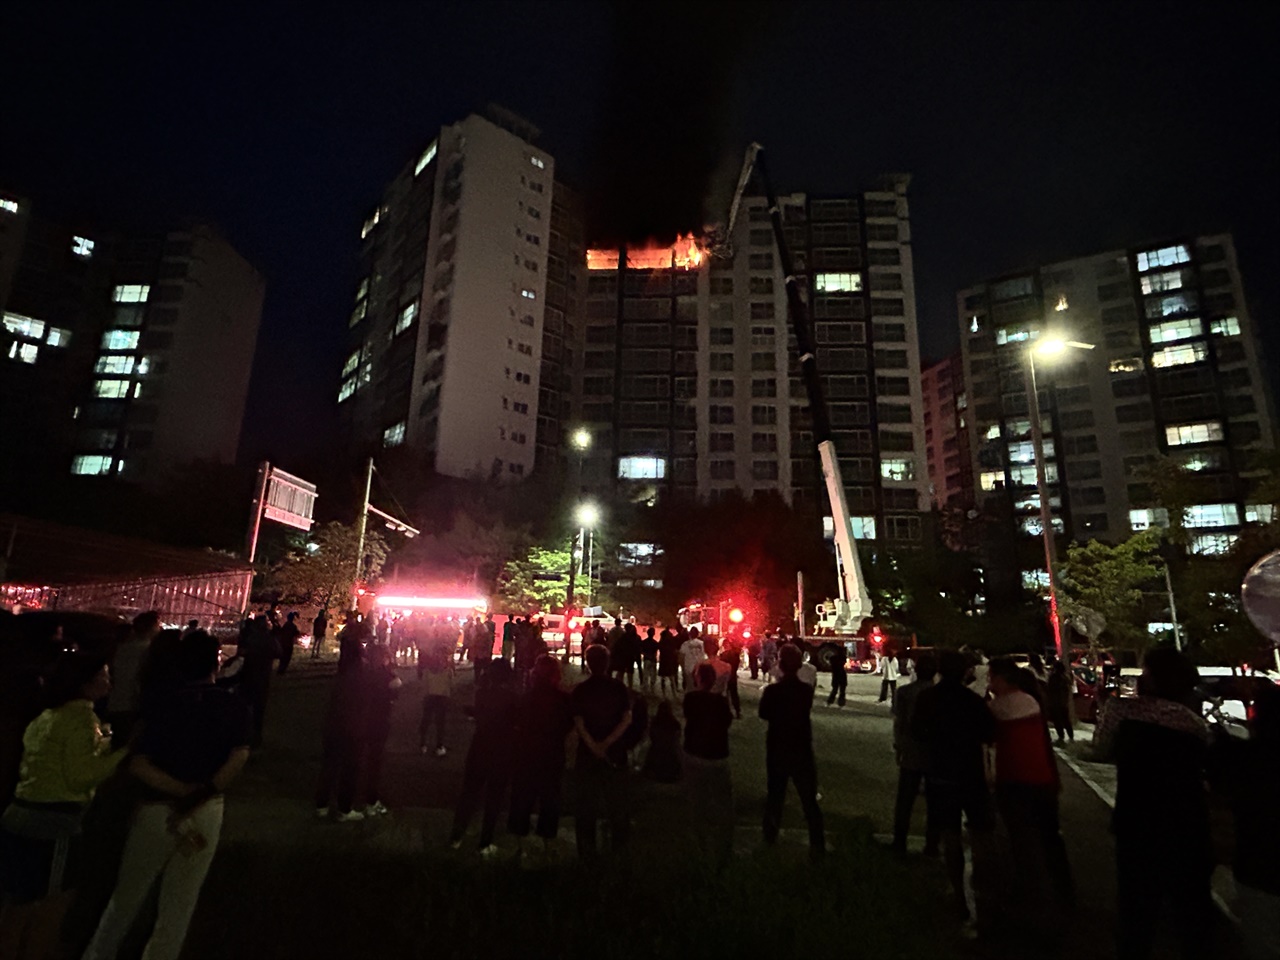 아파트 주민들은 불이 나자 긴급 대피했으며 아파트 주변에는 500여 명의 주민이 나와 진압 상황을 지켜봤다. 하지만 진압이 늦어지면서 불이 위층으로 번지자 주민들은 발을 동동 굴렀다.